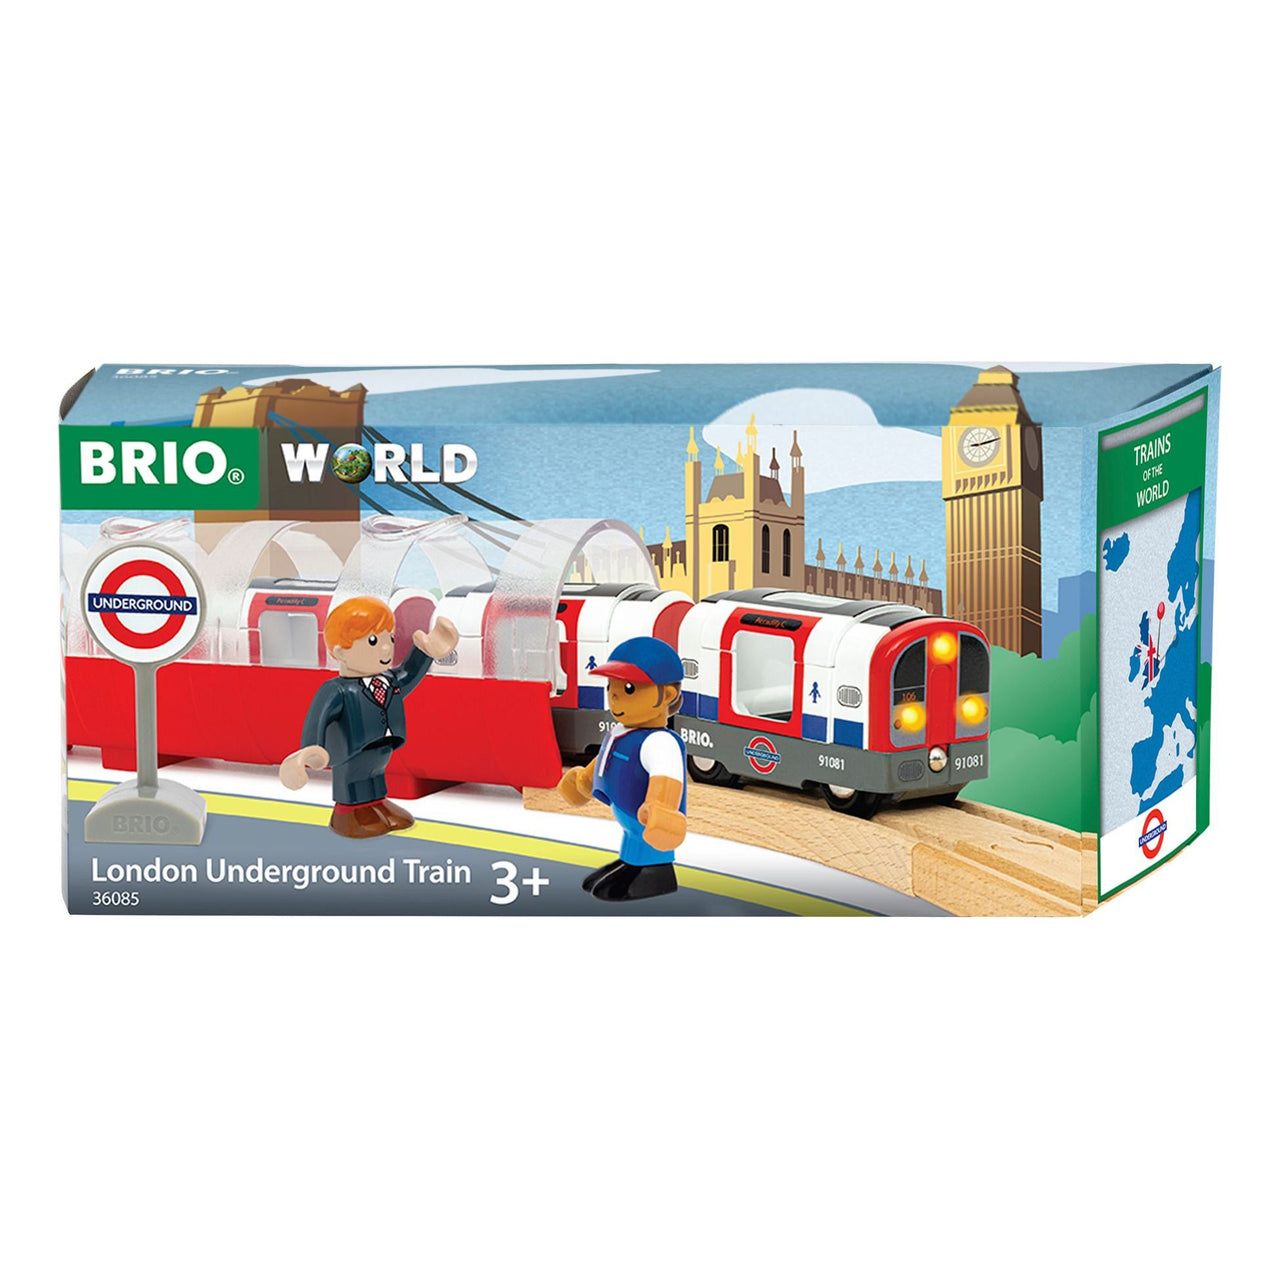 Brio Trains of the World London Underground BRIO